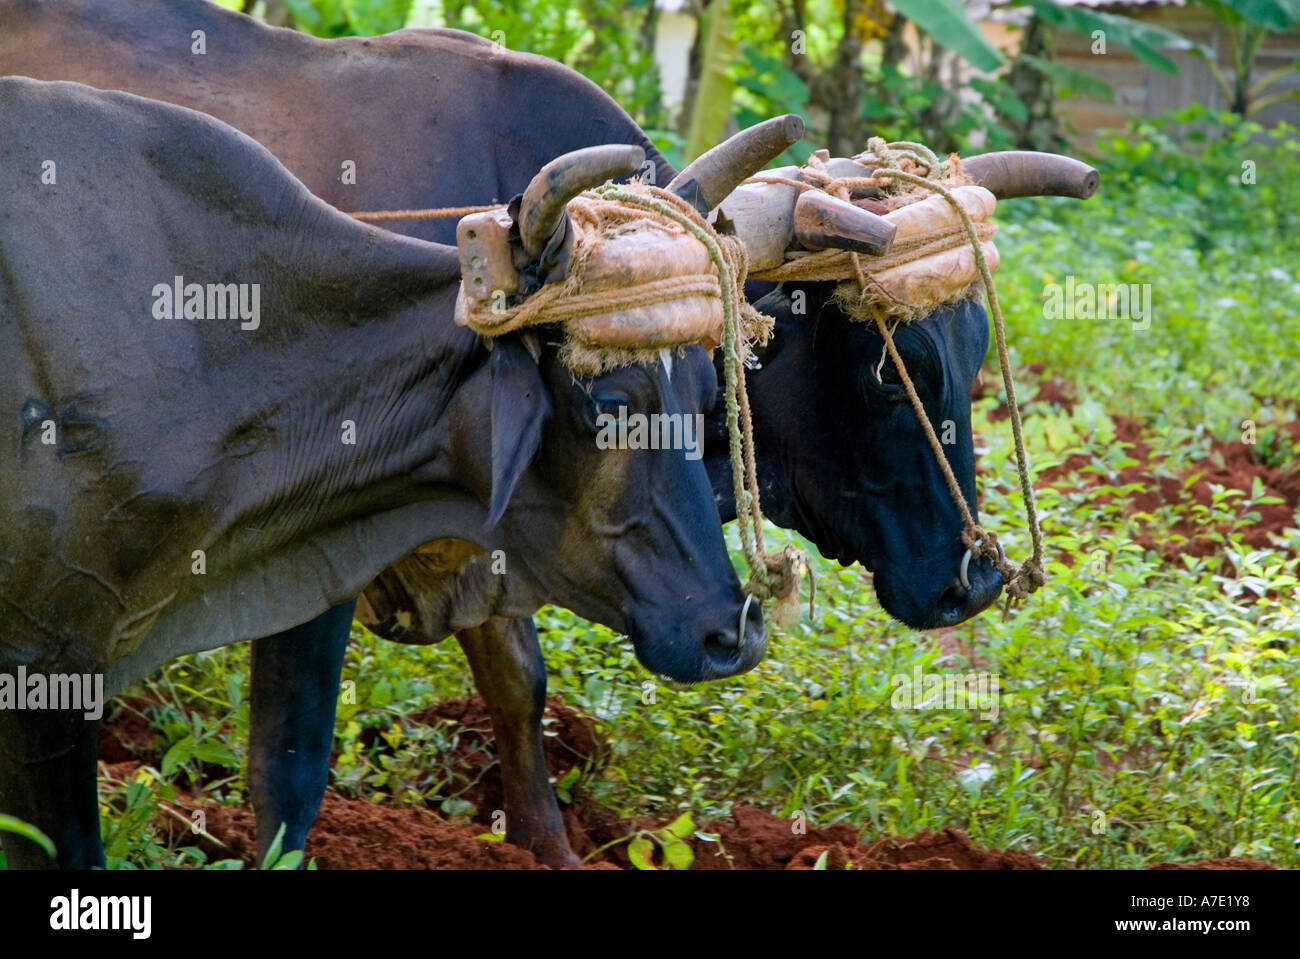 Dos toros / bueyes arando en un campo, Viñales, provincia de Pinar del Río, Cuba. Foto de stock